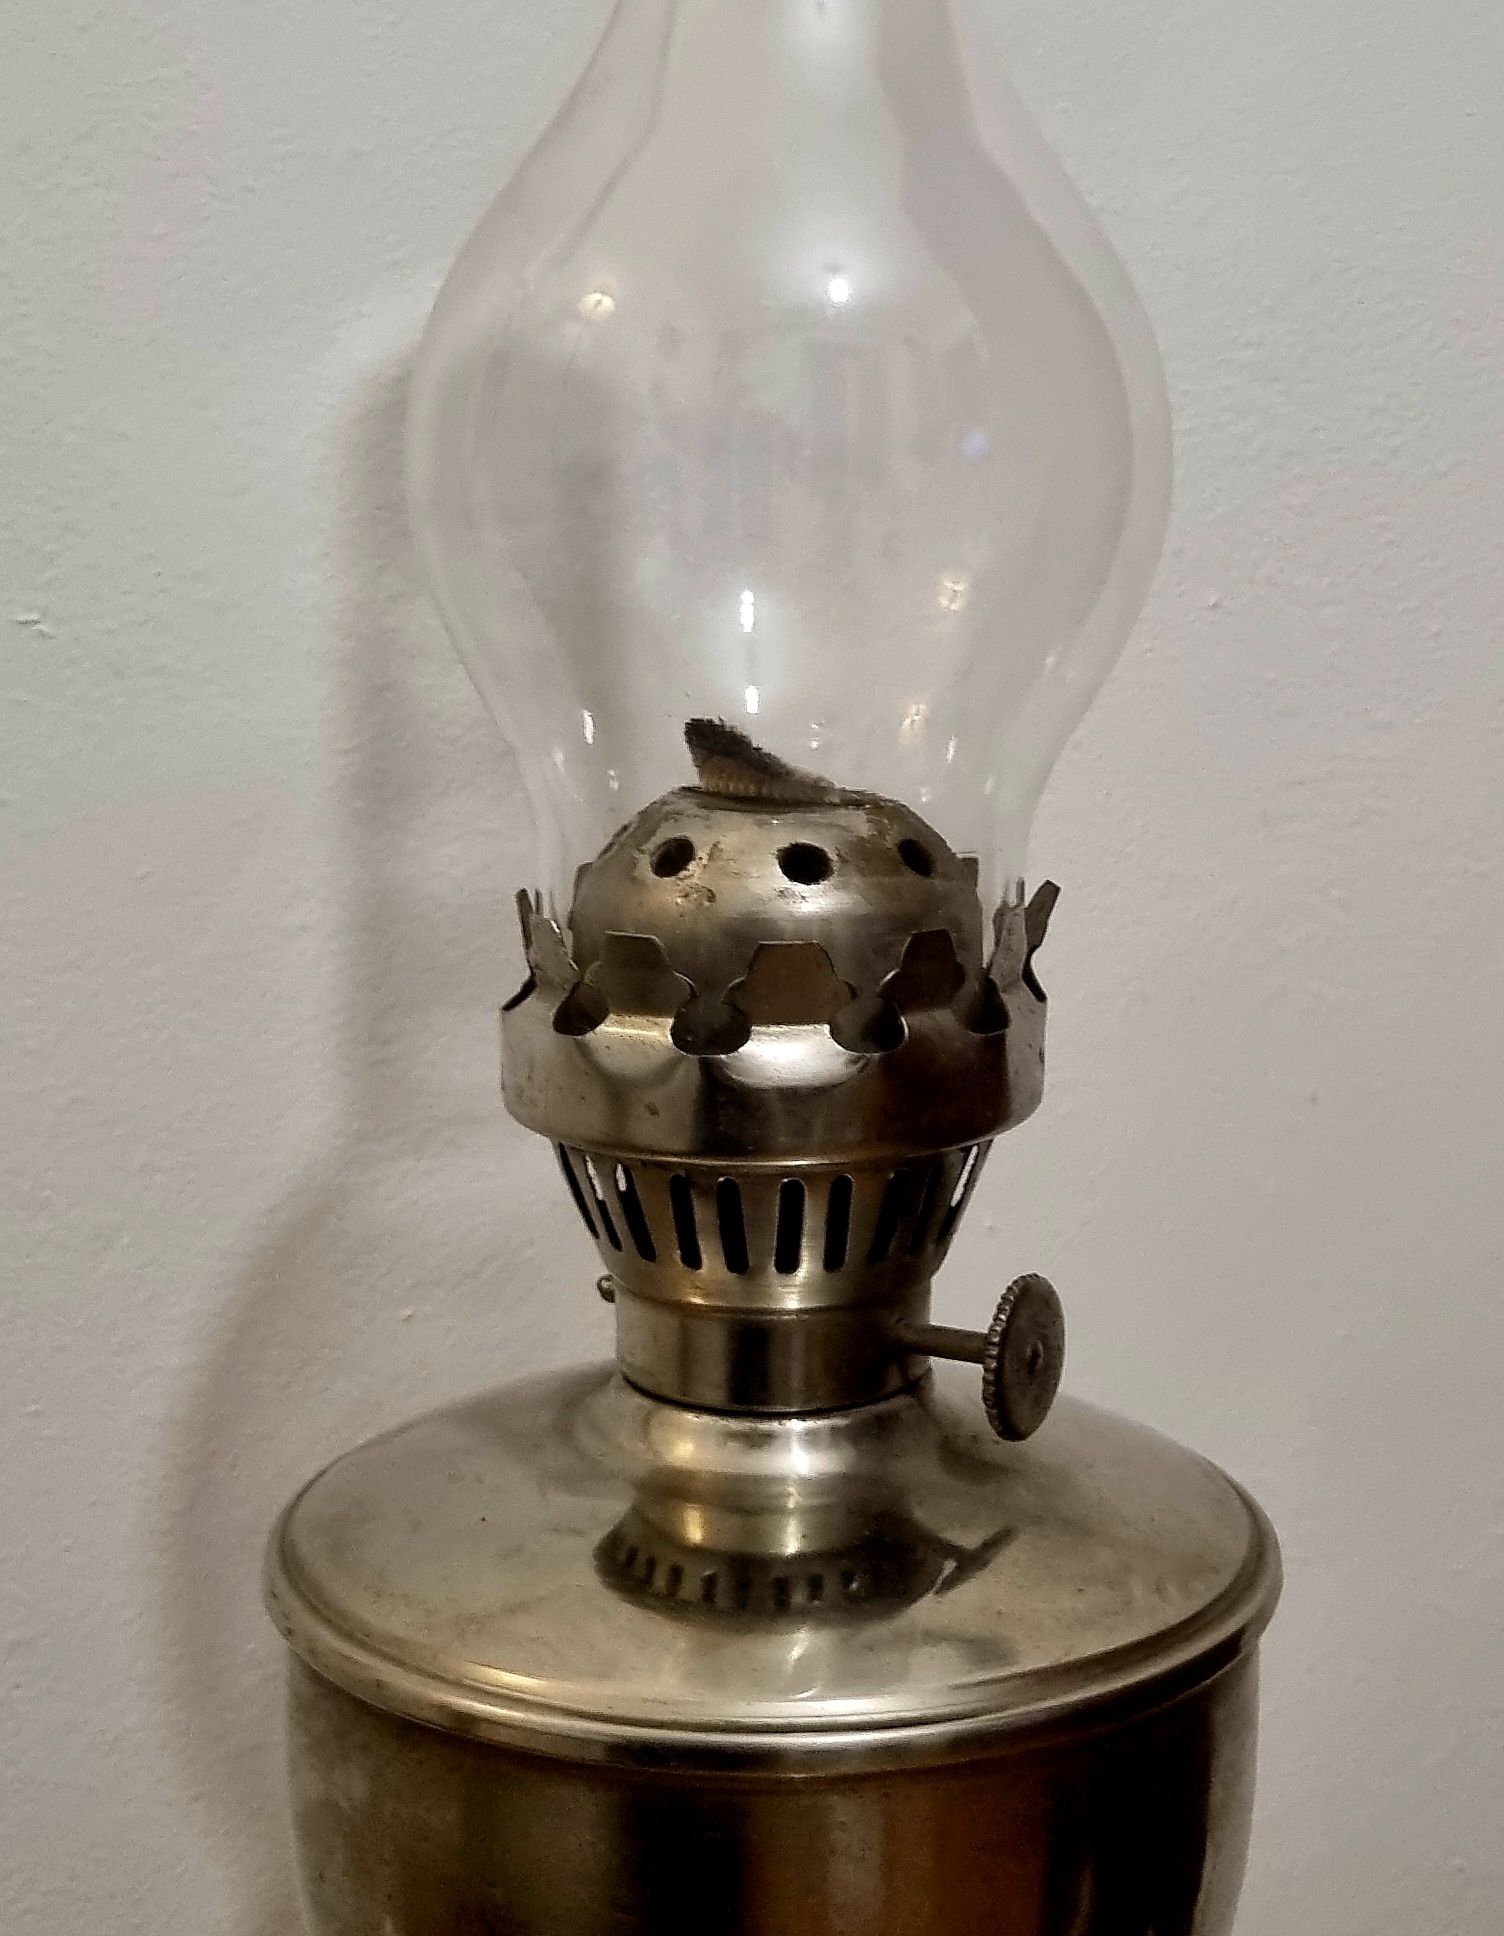 Stara wielka lampa naftowa - 60cm